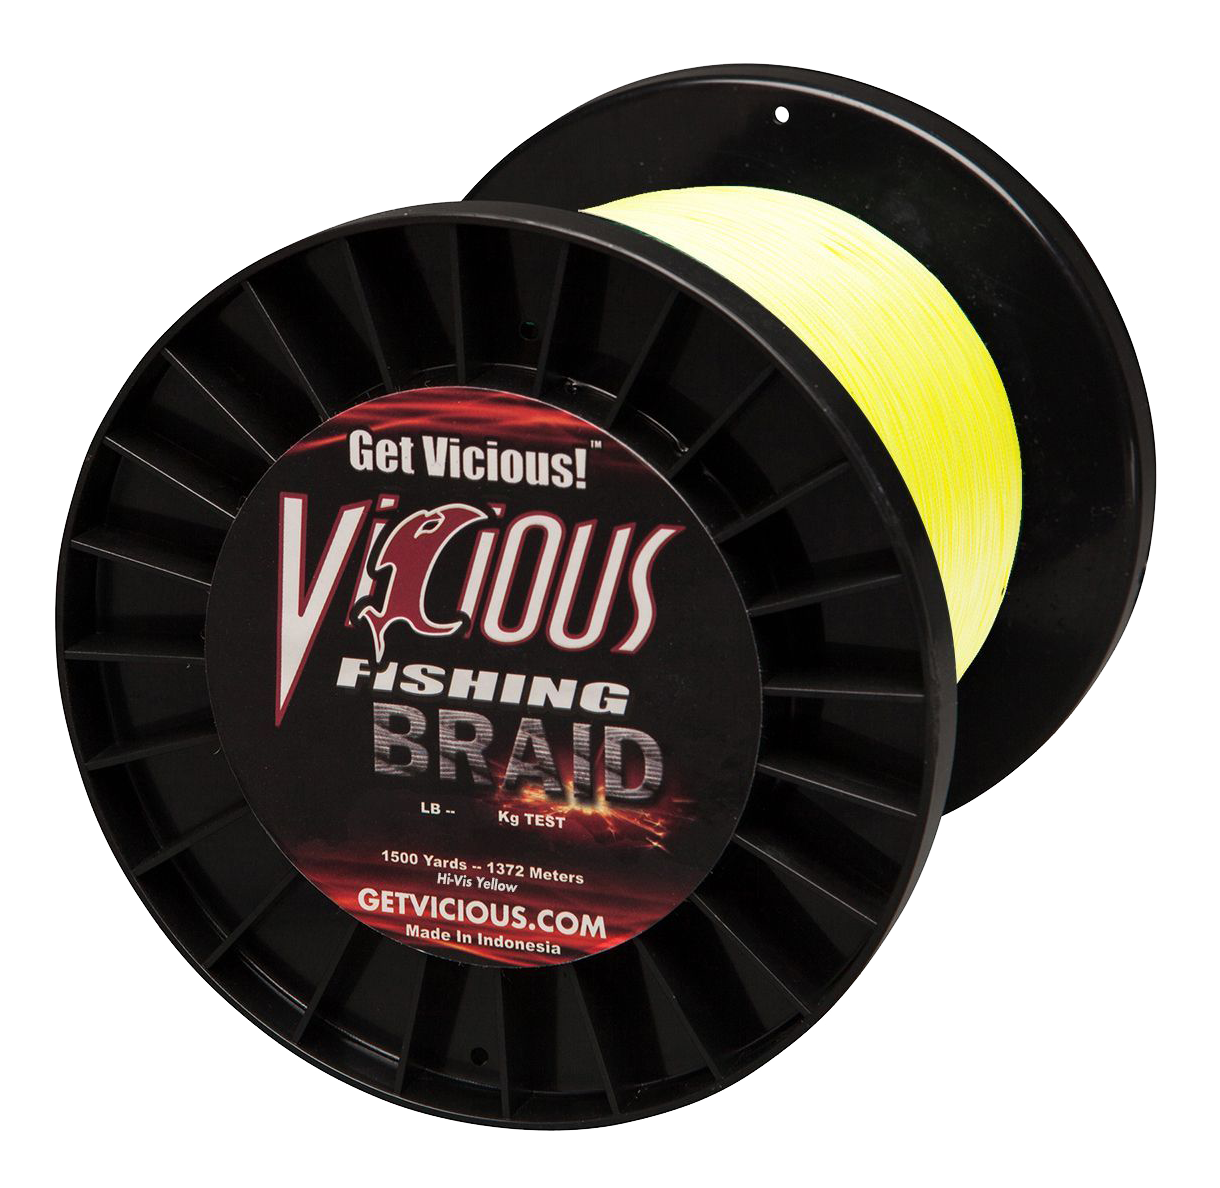 Vicious Fishing Standard Braid Fishing Line - Hi-Vis Yellow - 3000 Yards - 120 lb.